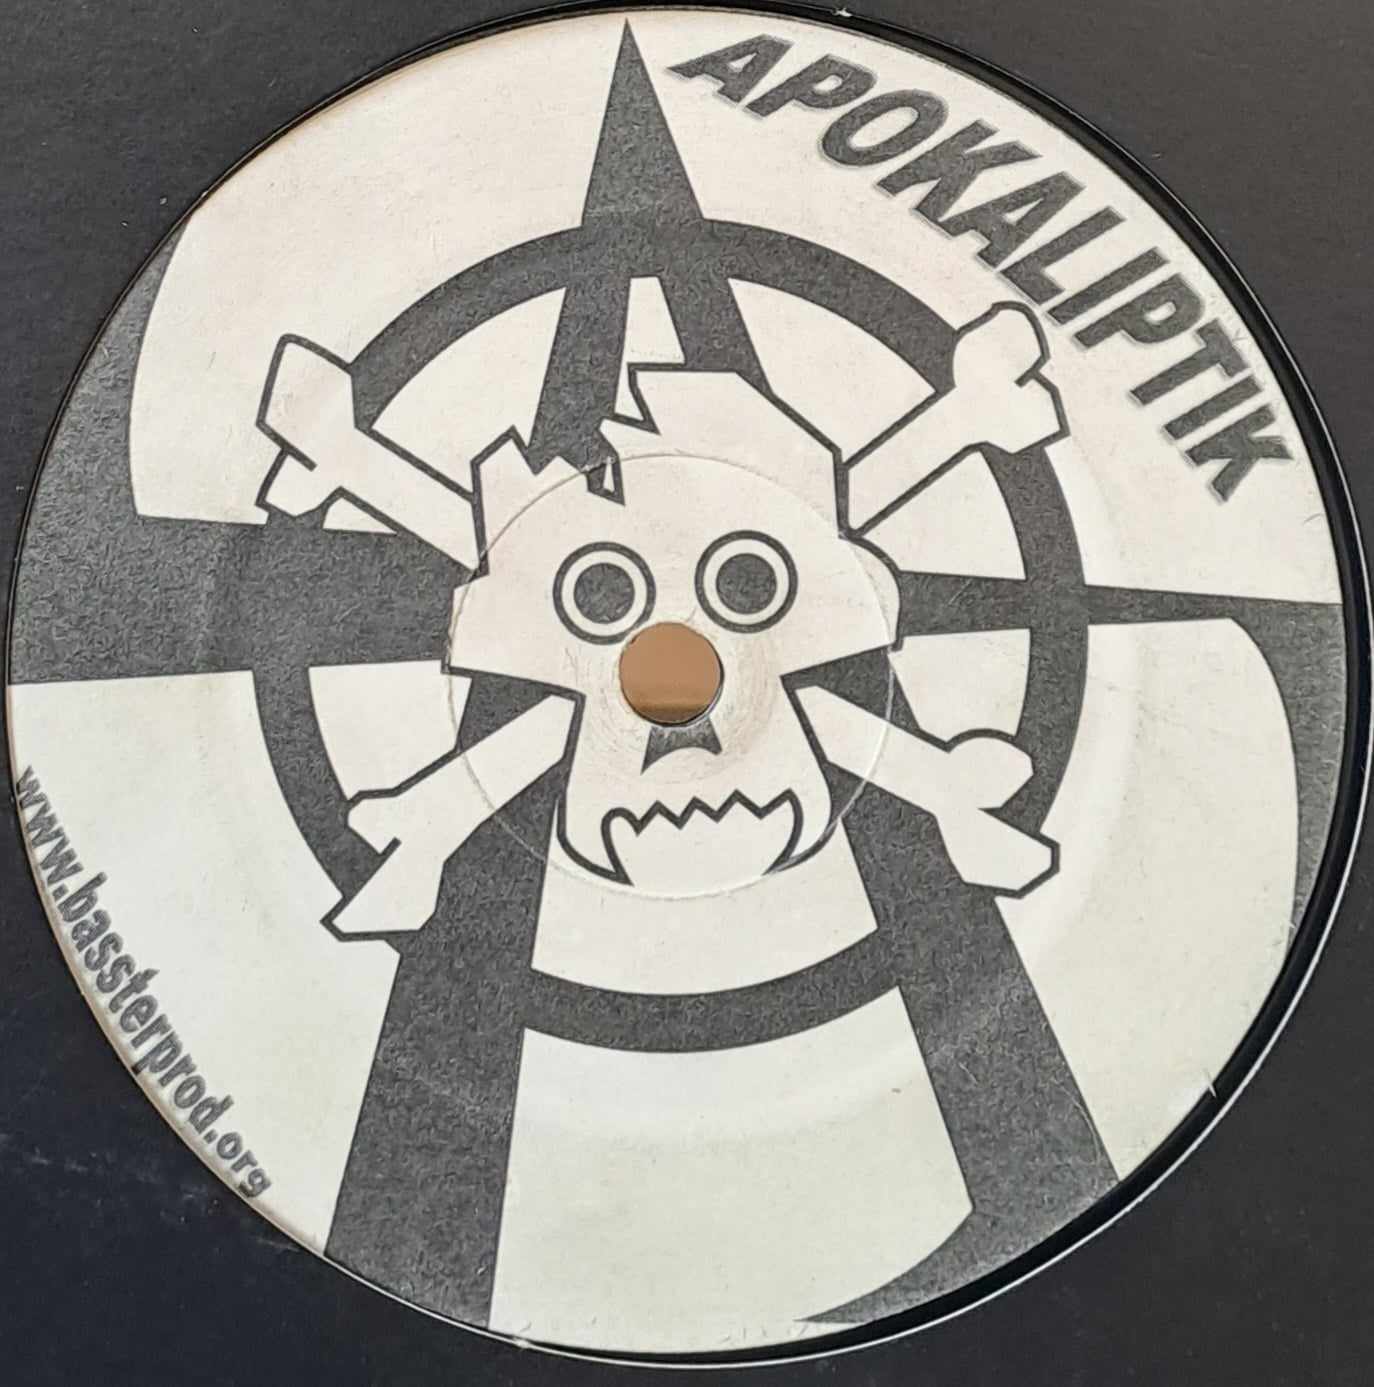 Apokaliptik 01 - vinyle freetekno